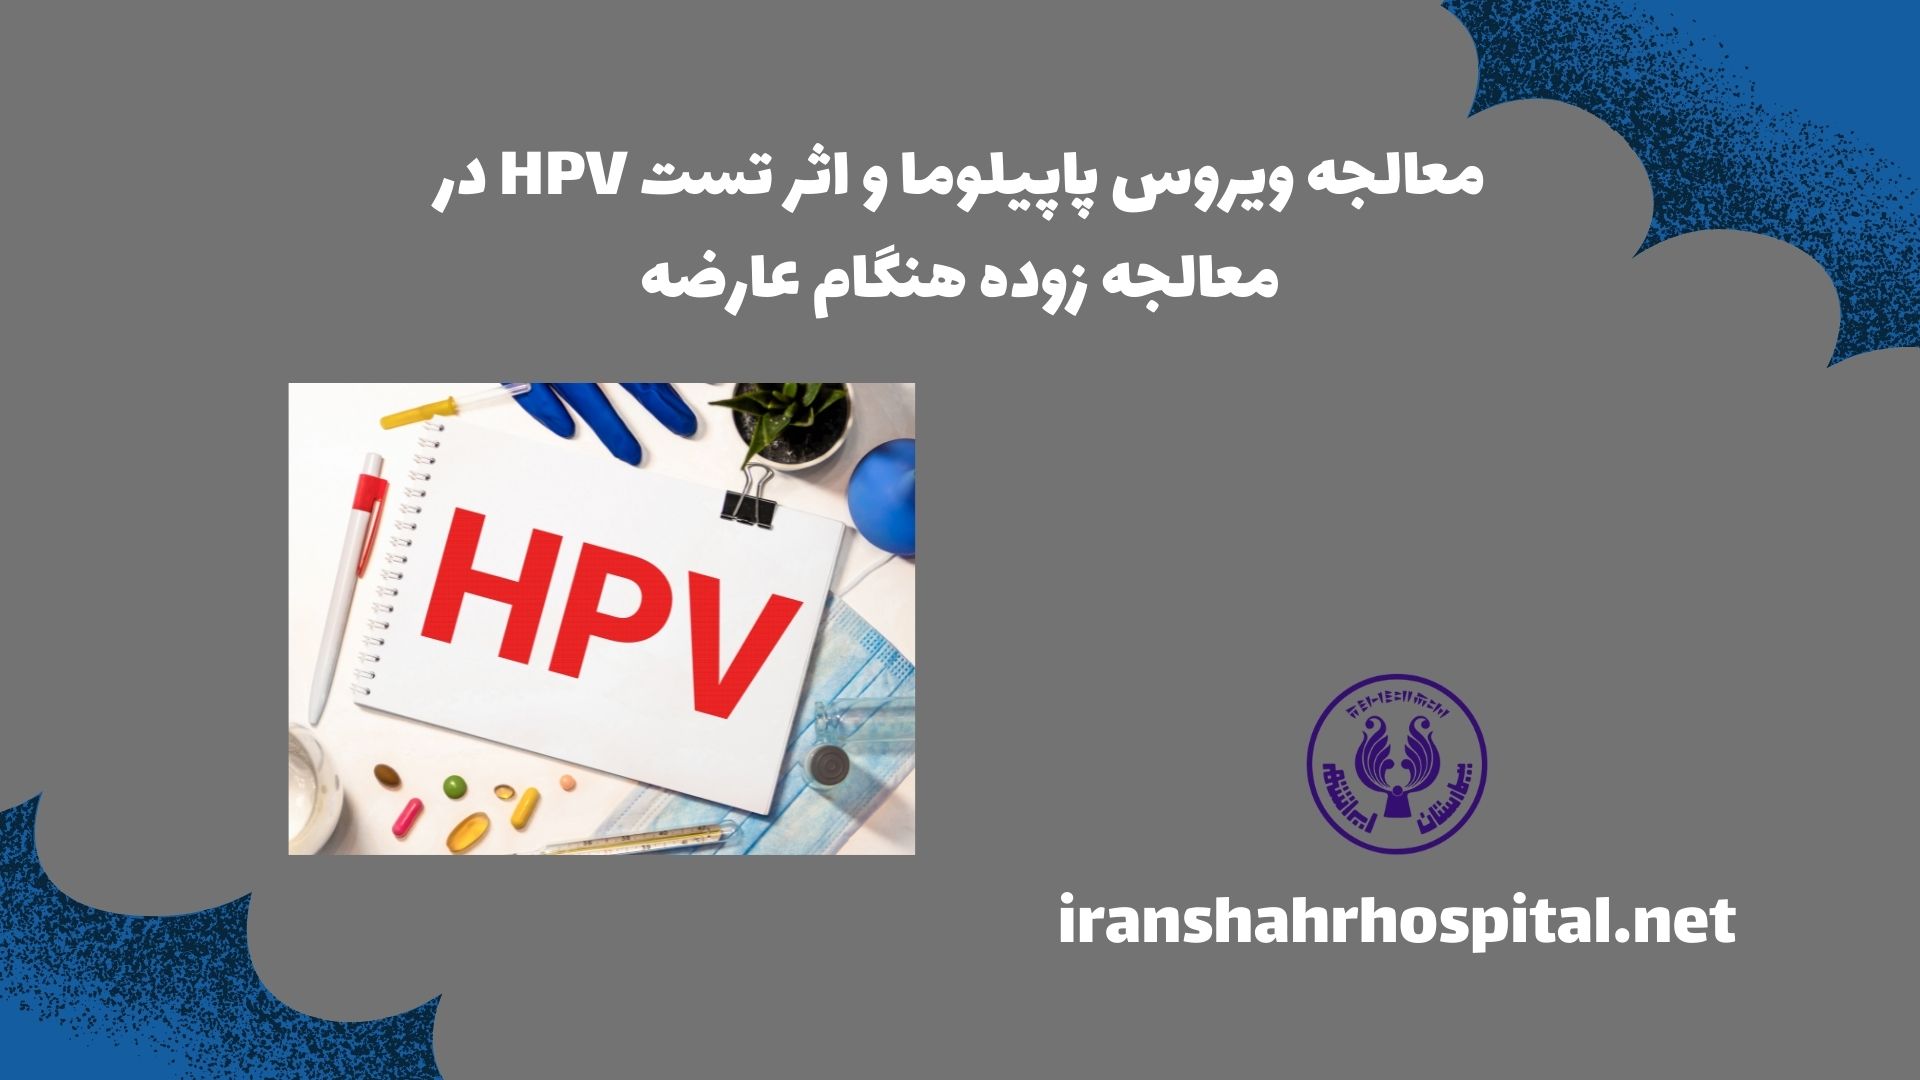 معالجه ویروس پاپیلوما و اثر تست HPV در معالجه زود هنگام عارضه